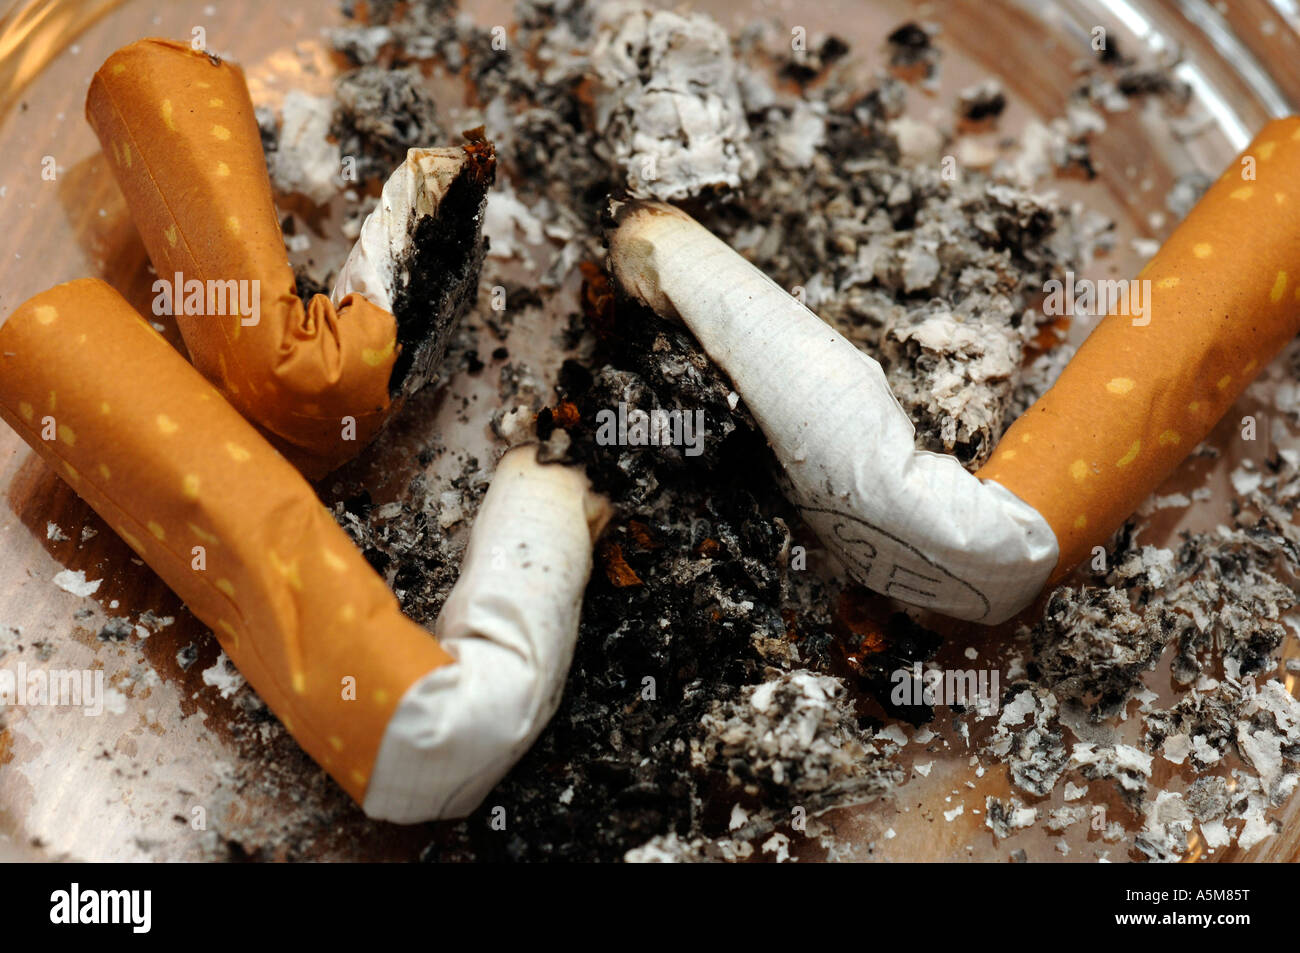 Zigarette Aschenbecher im rauchen Raucher Tabak Asche blauer Dunst Zigaretten Glimmstengel Krankheit Sargnagel paffen Ziehen glü Foto Stock